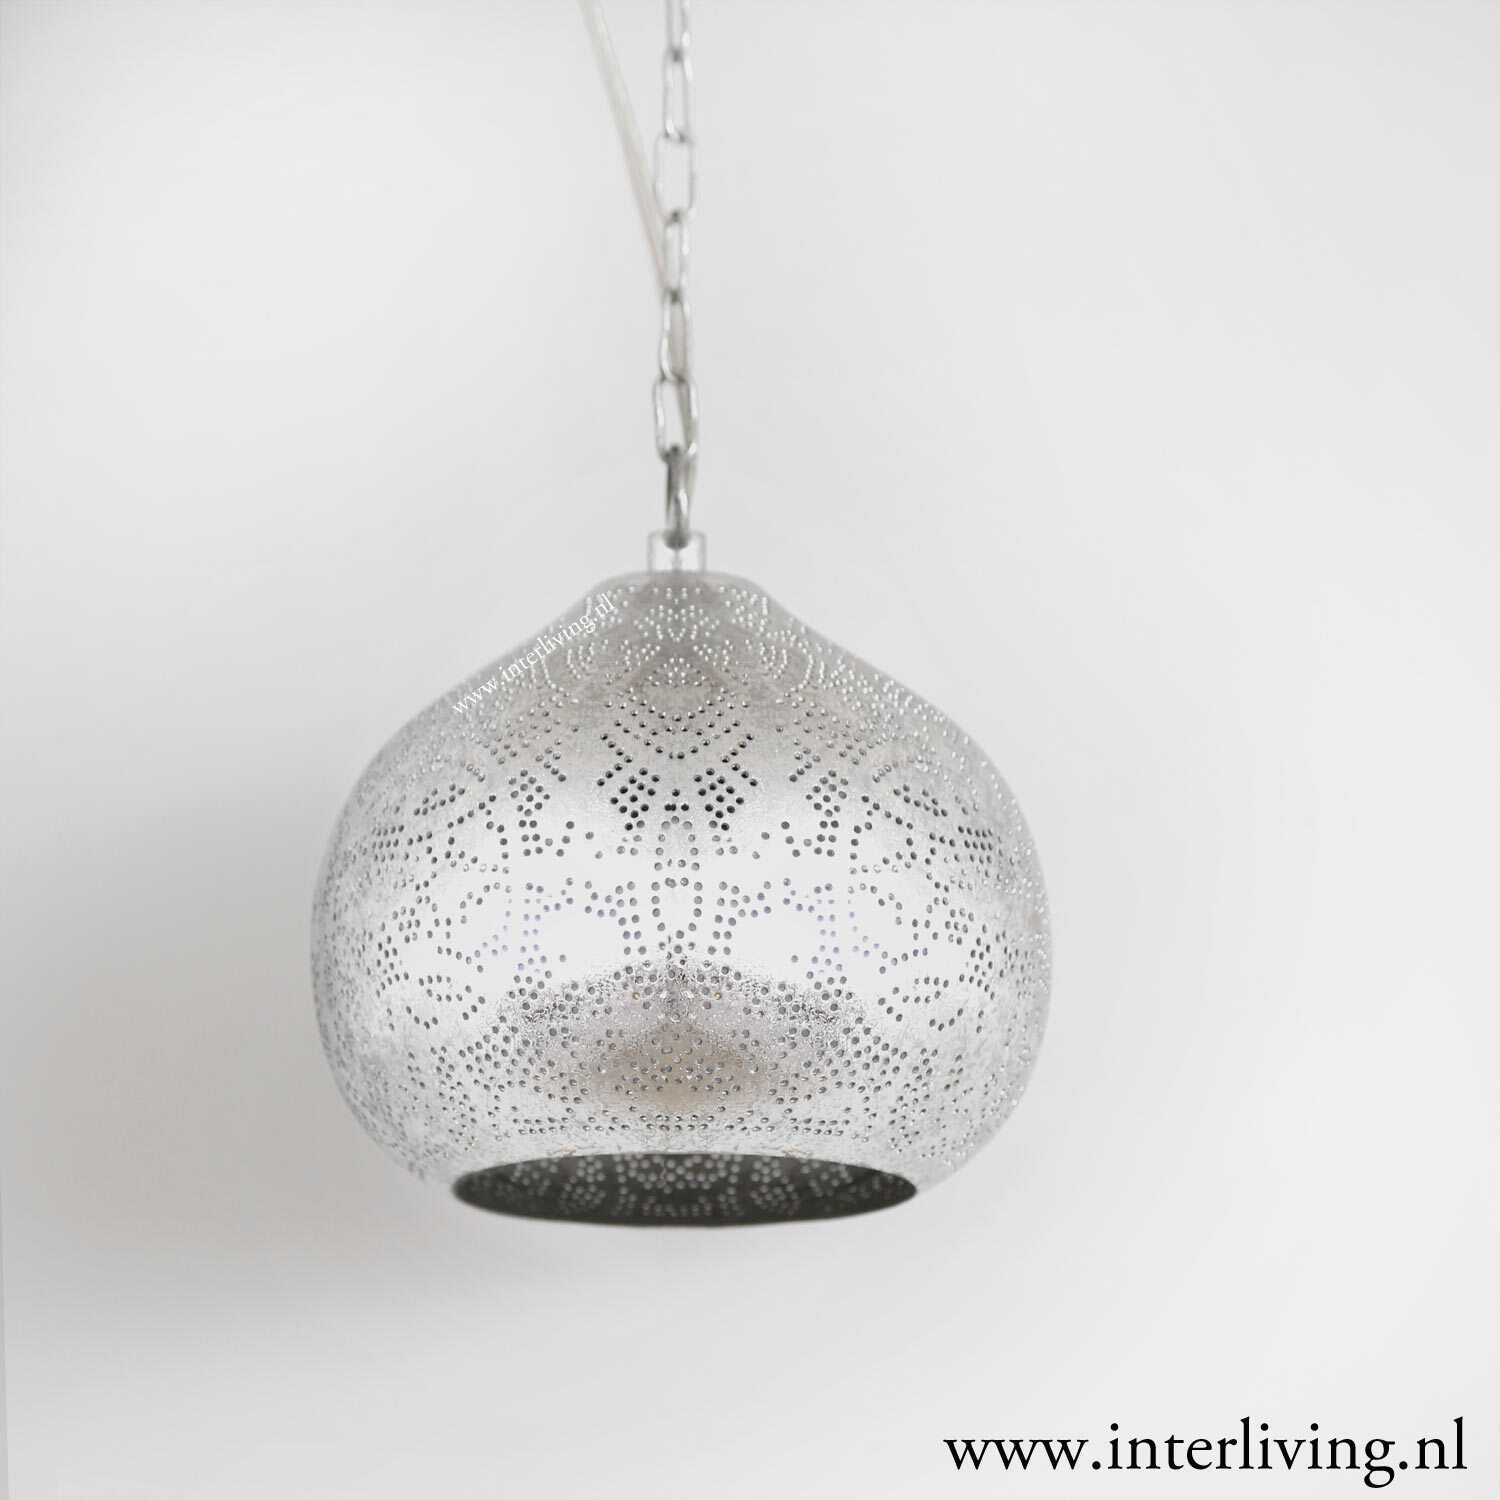 oosters hanglamp handgemaakt - zilver look boho stijl uit India met bijpassende tafellamp, leverbaar in verschillende grote maten